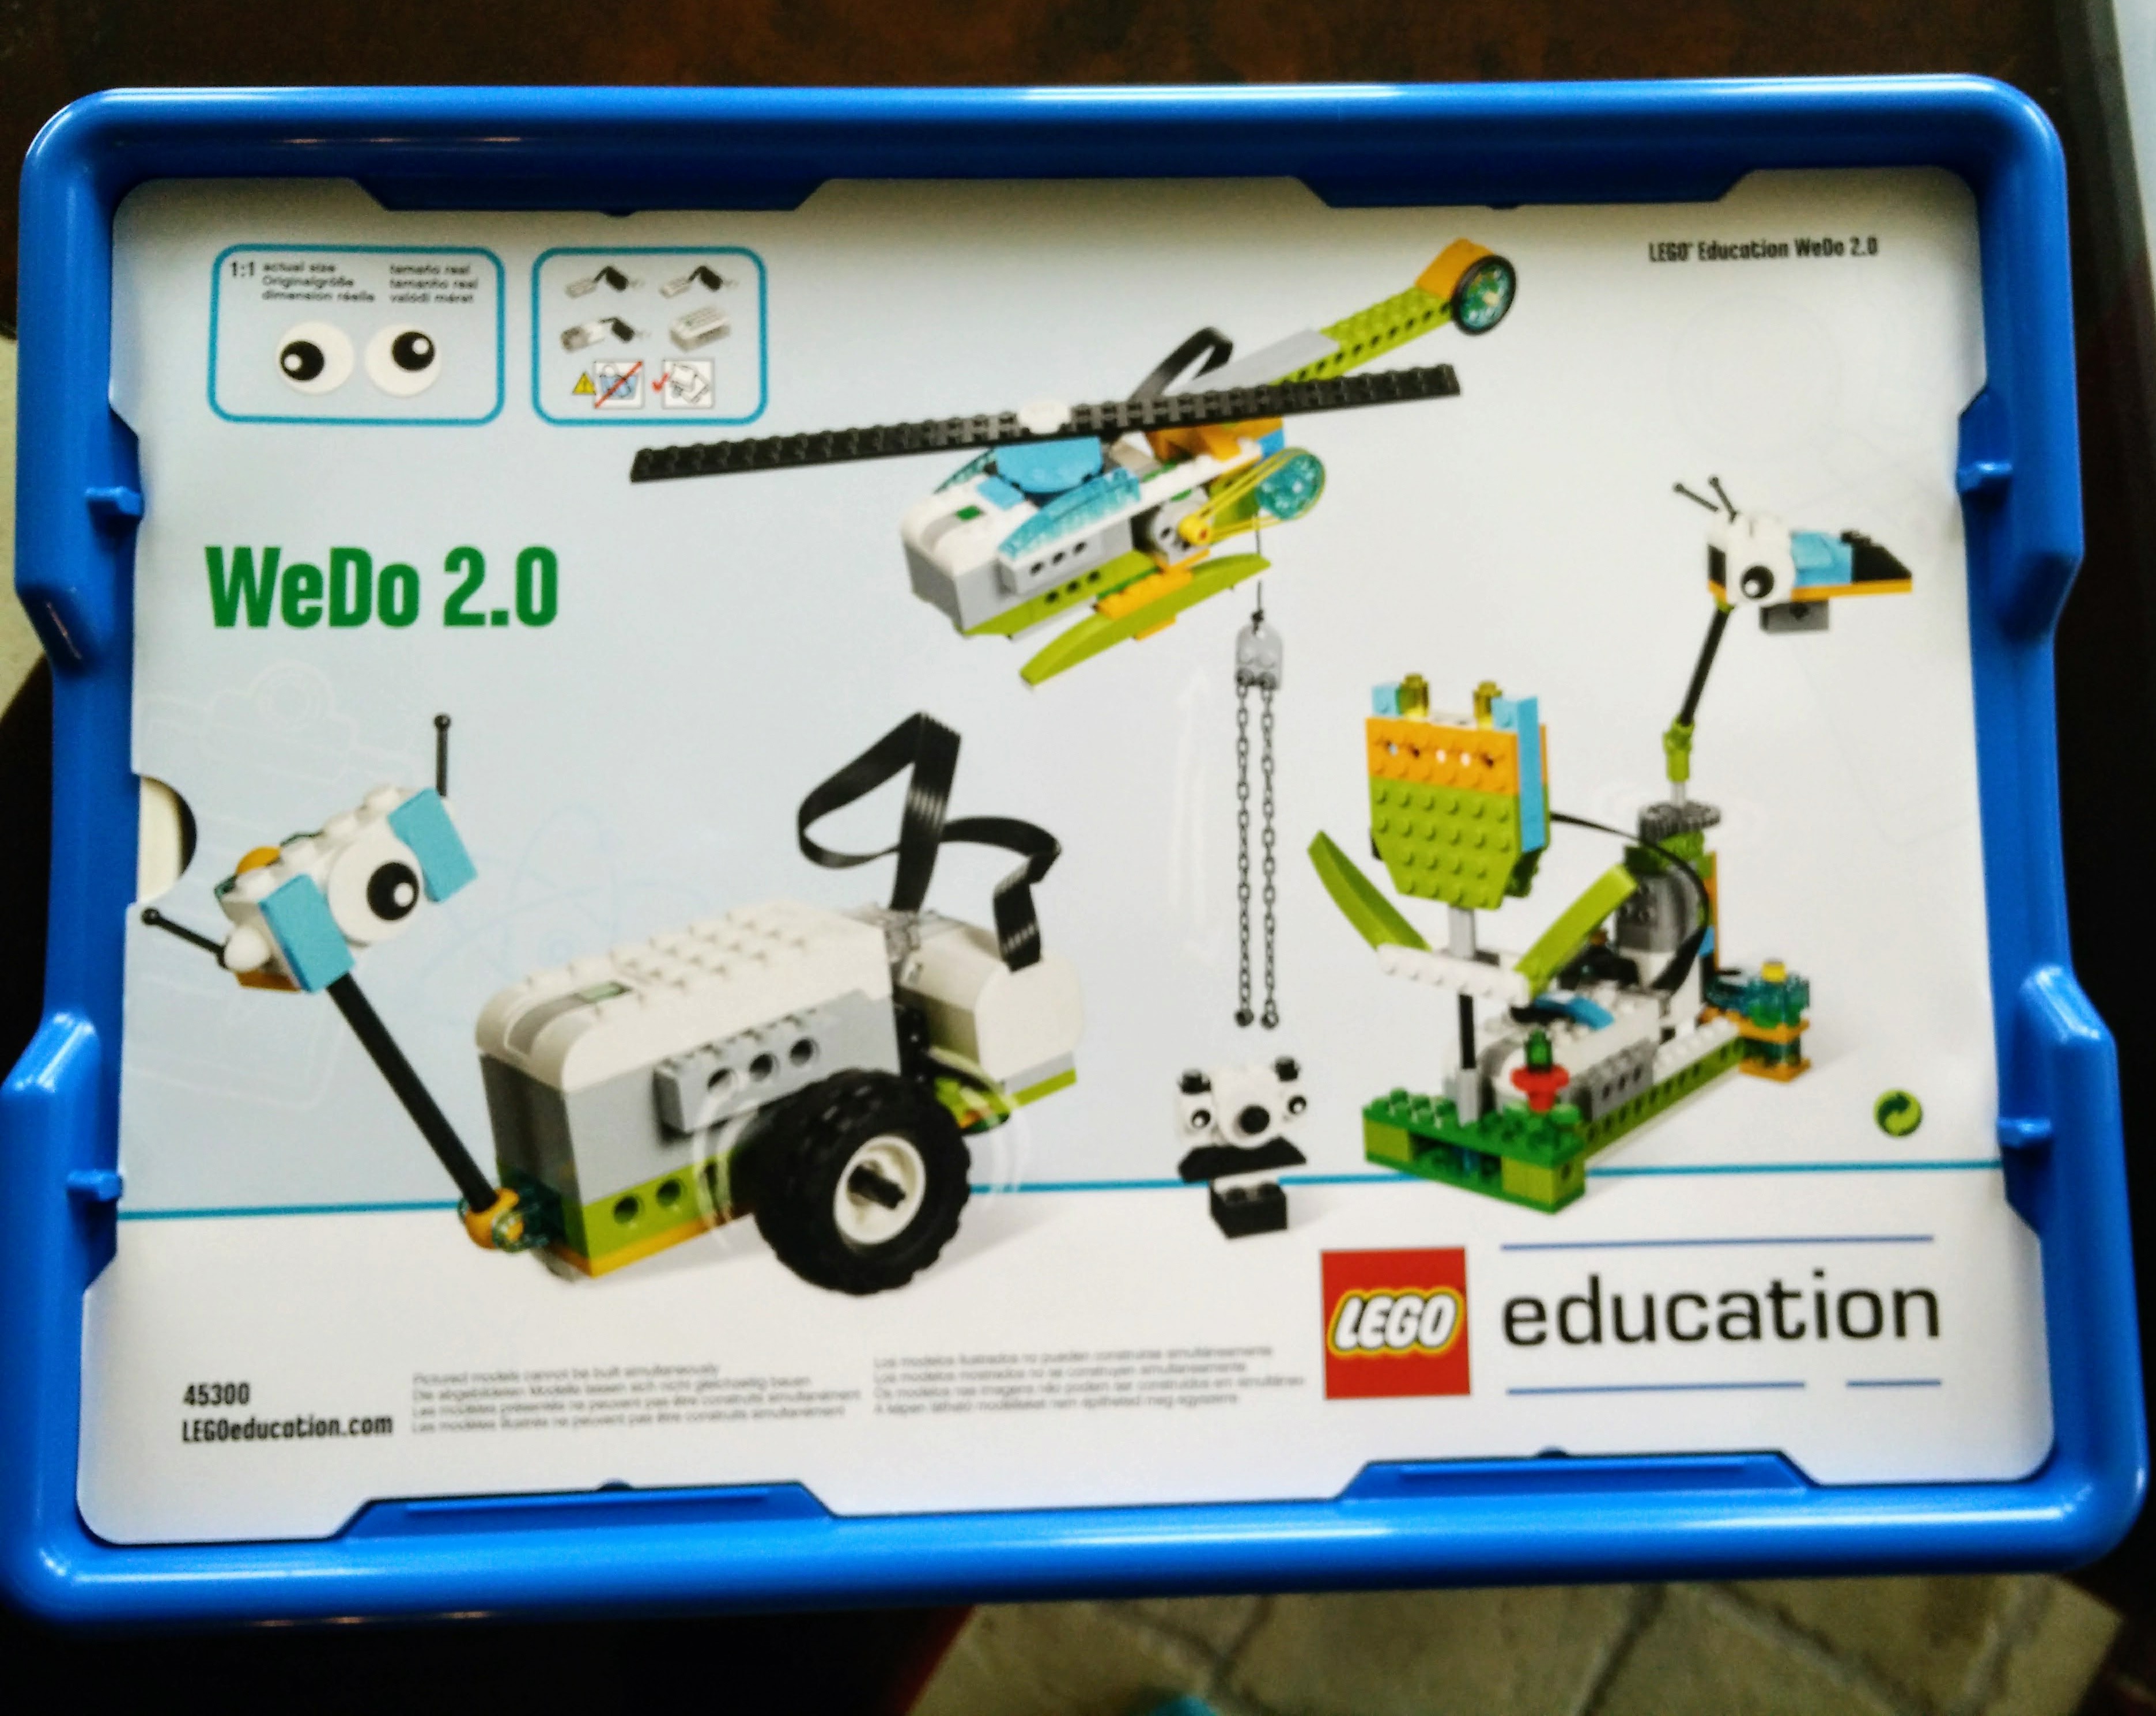 LEGO WeDo STEM Robotics Kit Introduction